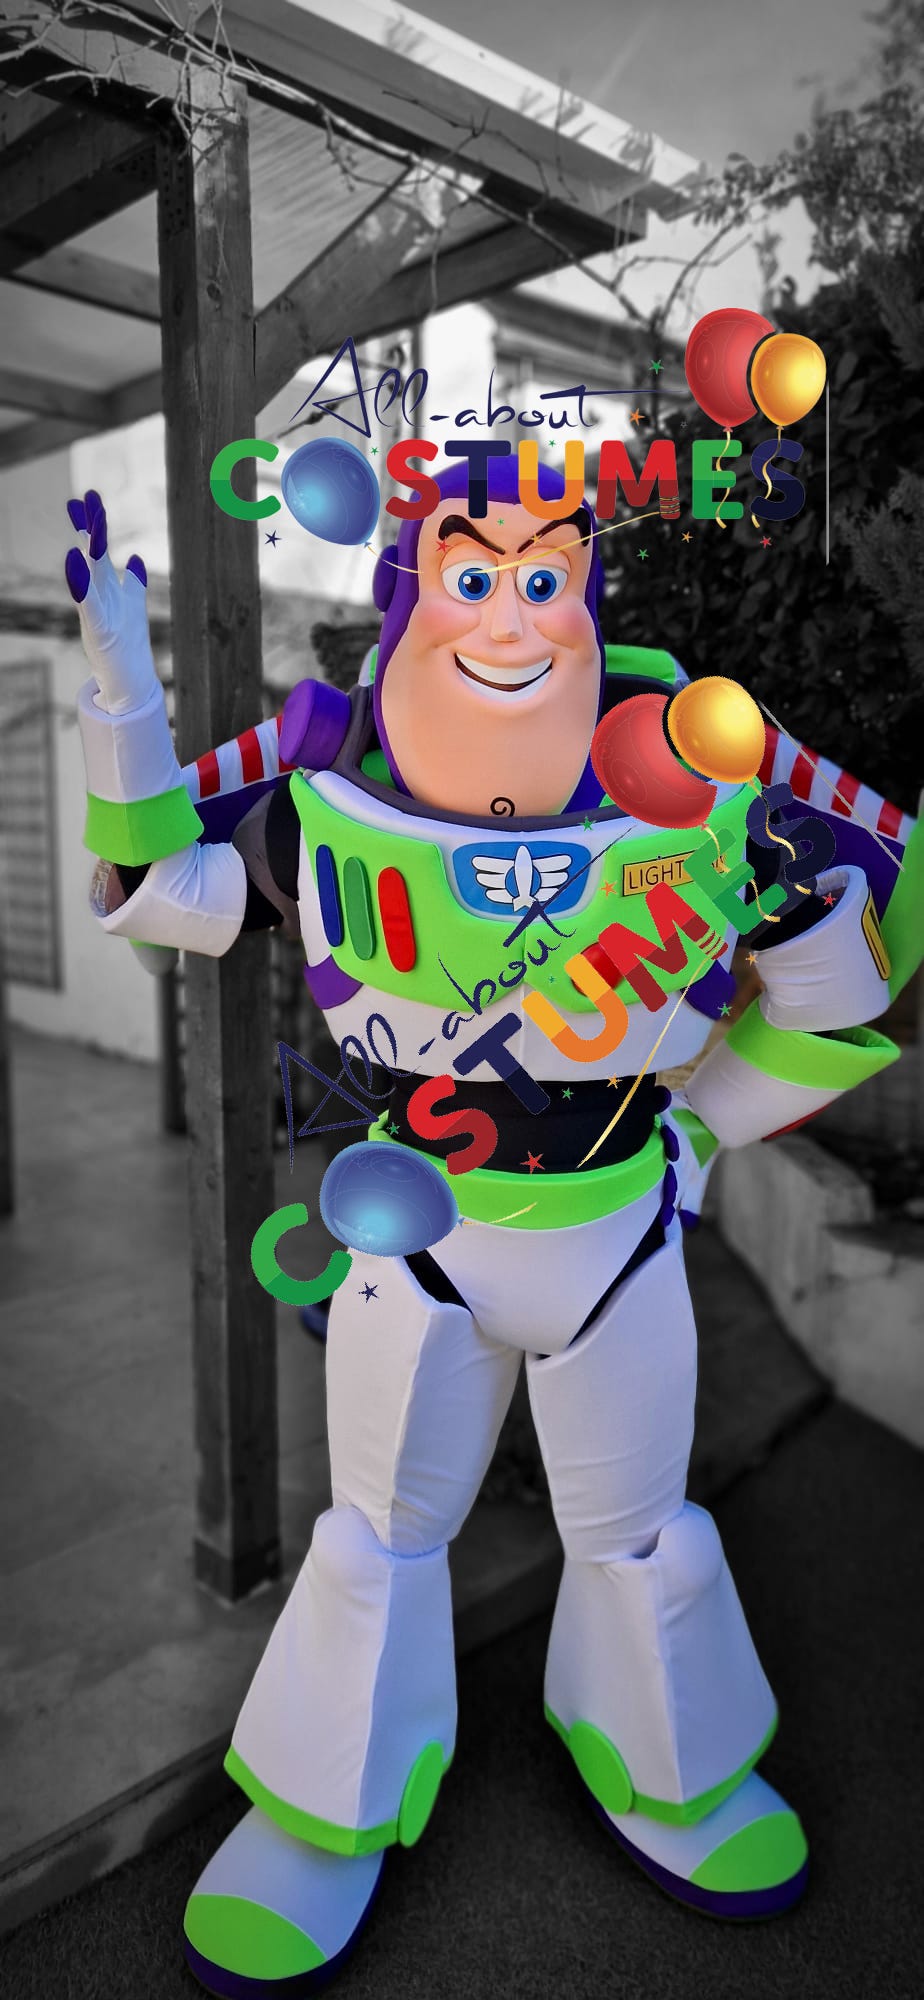 Toy Story Buzz Lightyear B